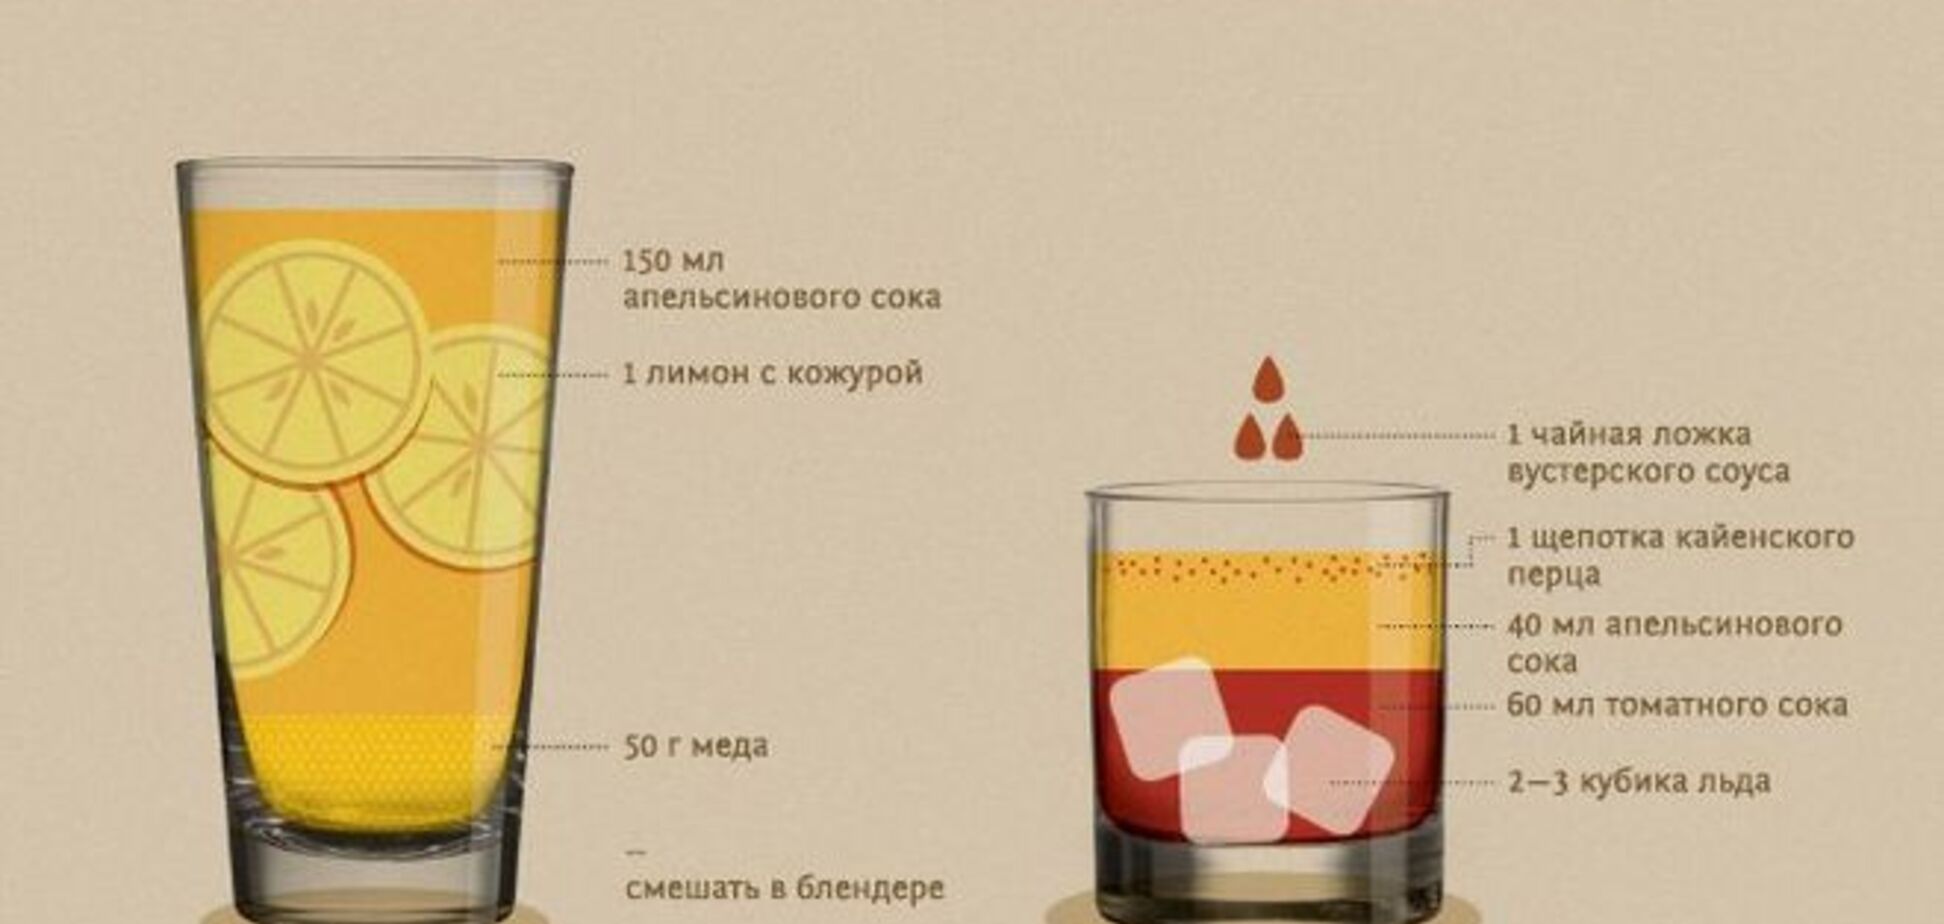 Как приготовить напитки, спасающие от похмелья. Инфографика